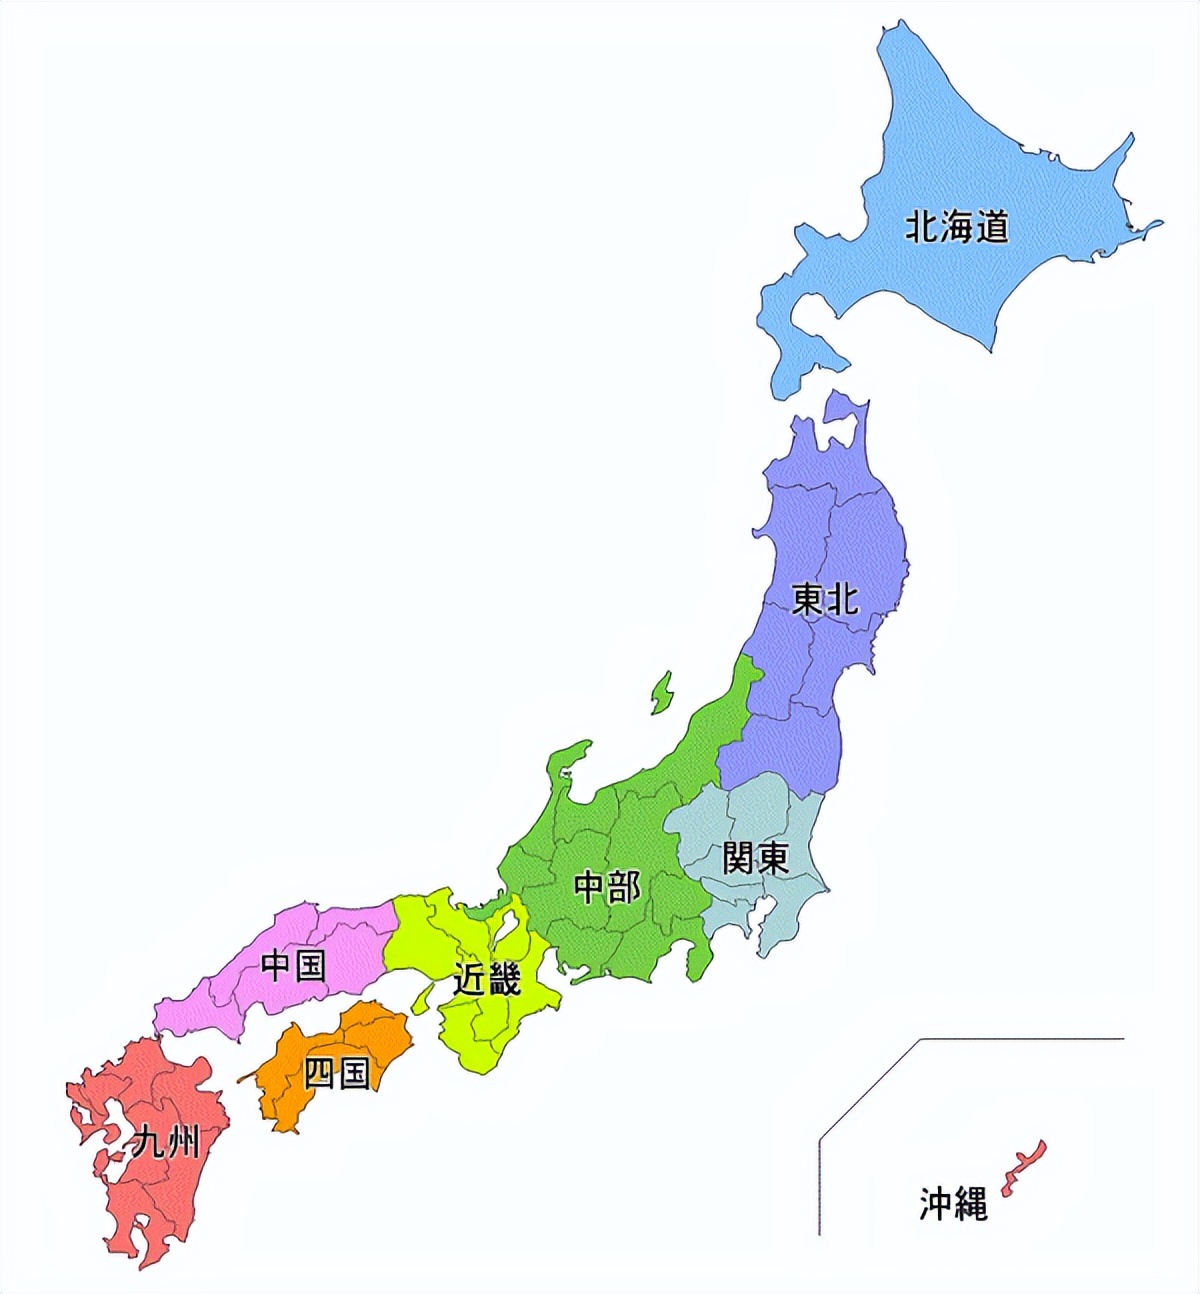 为什么日本有一个地区叫中国,谈谈日本的行政区划有什么特点